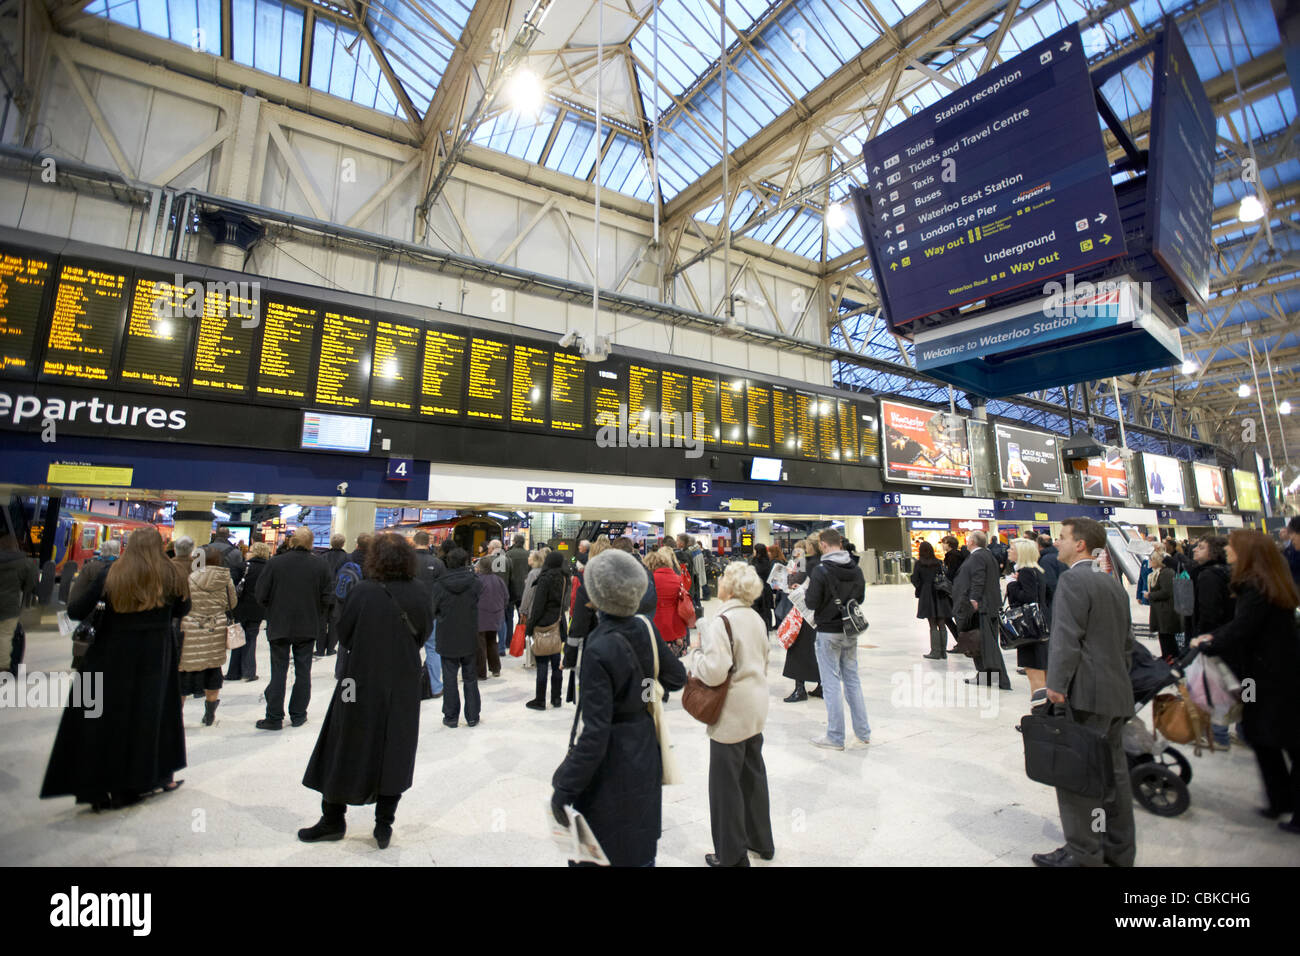 Le persone che cercano a livello locale e nazionale informazioni treno tavole a Waterloo Stazione ferroviaria Londra Inghilterra Regno Unito Regno Unito Foto Stock